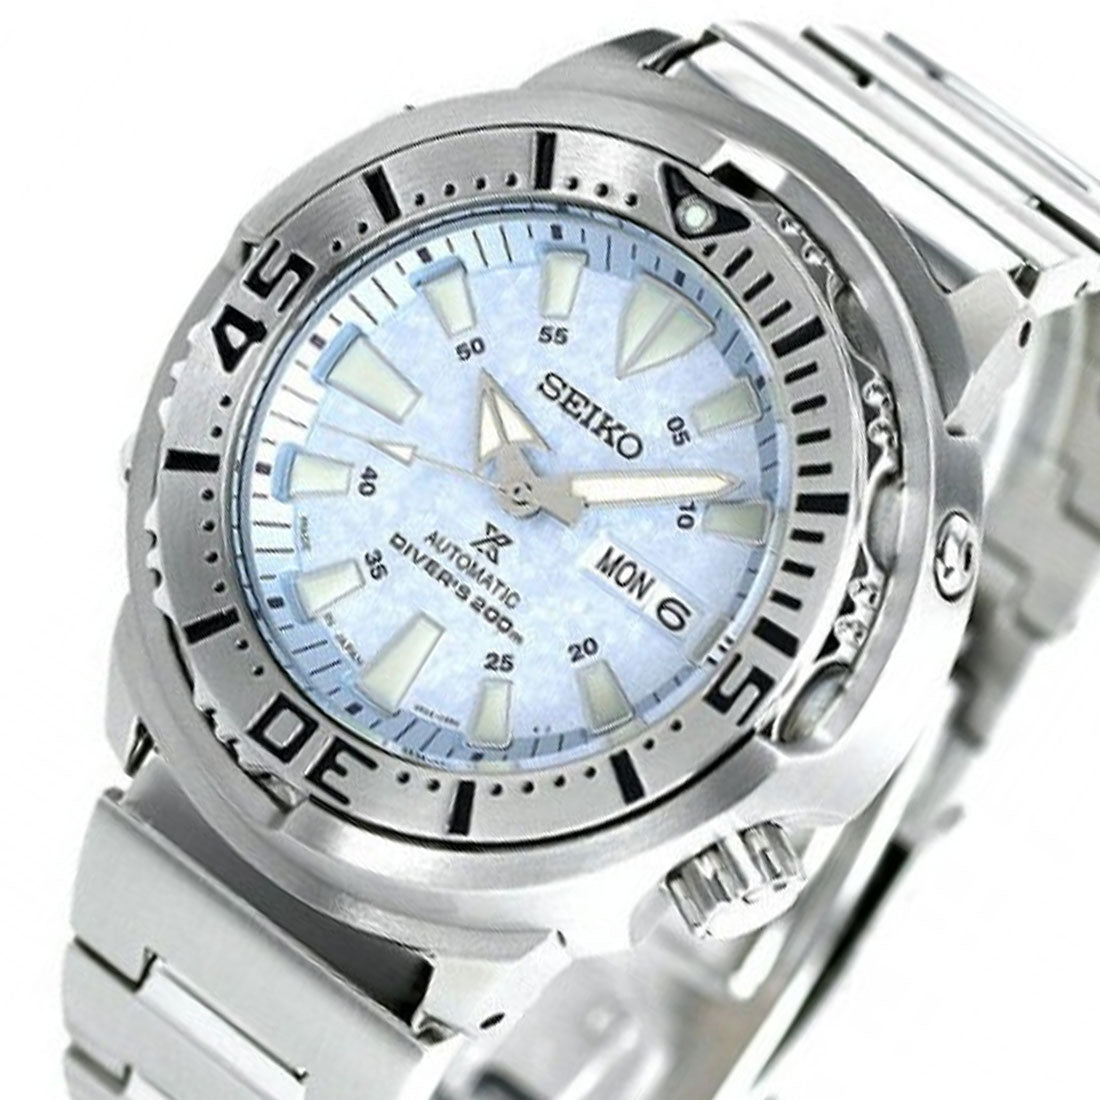 Seiko Prospex JDM Baby Tuna Ice Frost SBDY053 SBDY053J1 SBDY053J Limited Edition Watch -Seiko